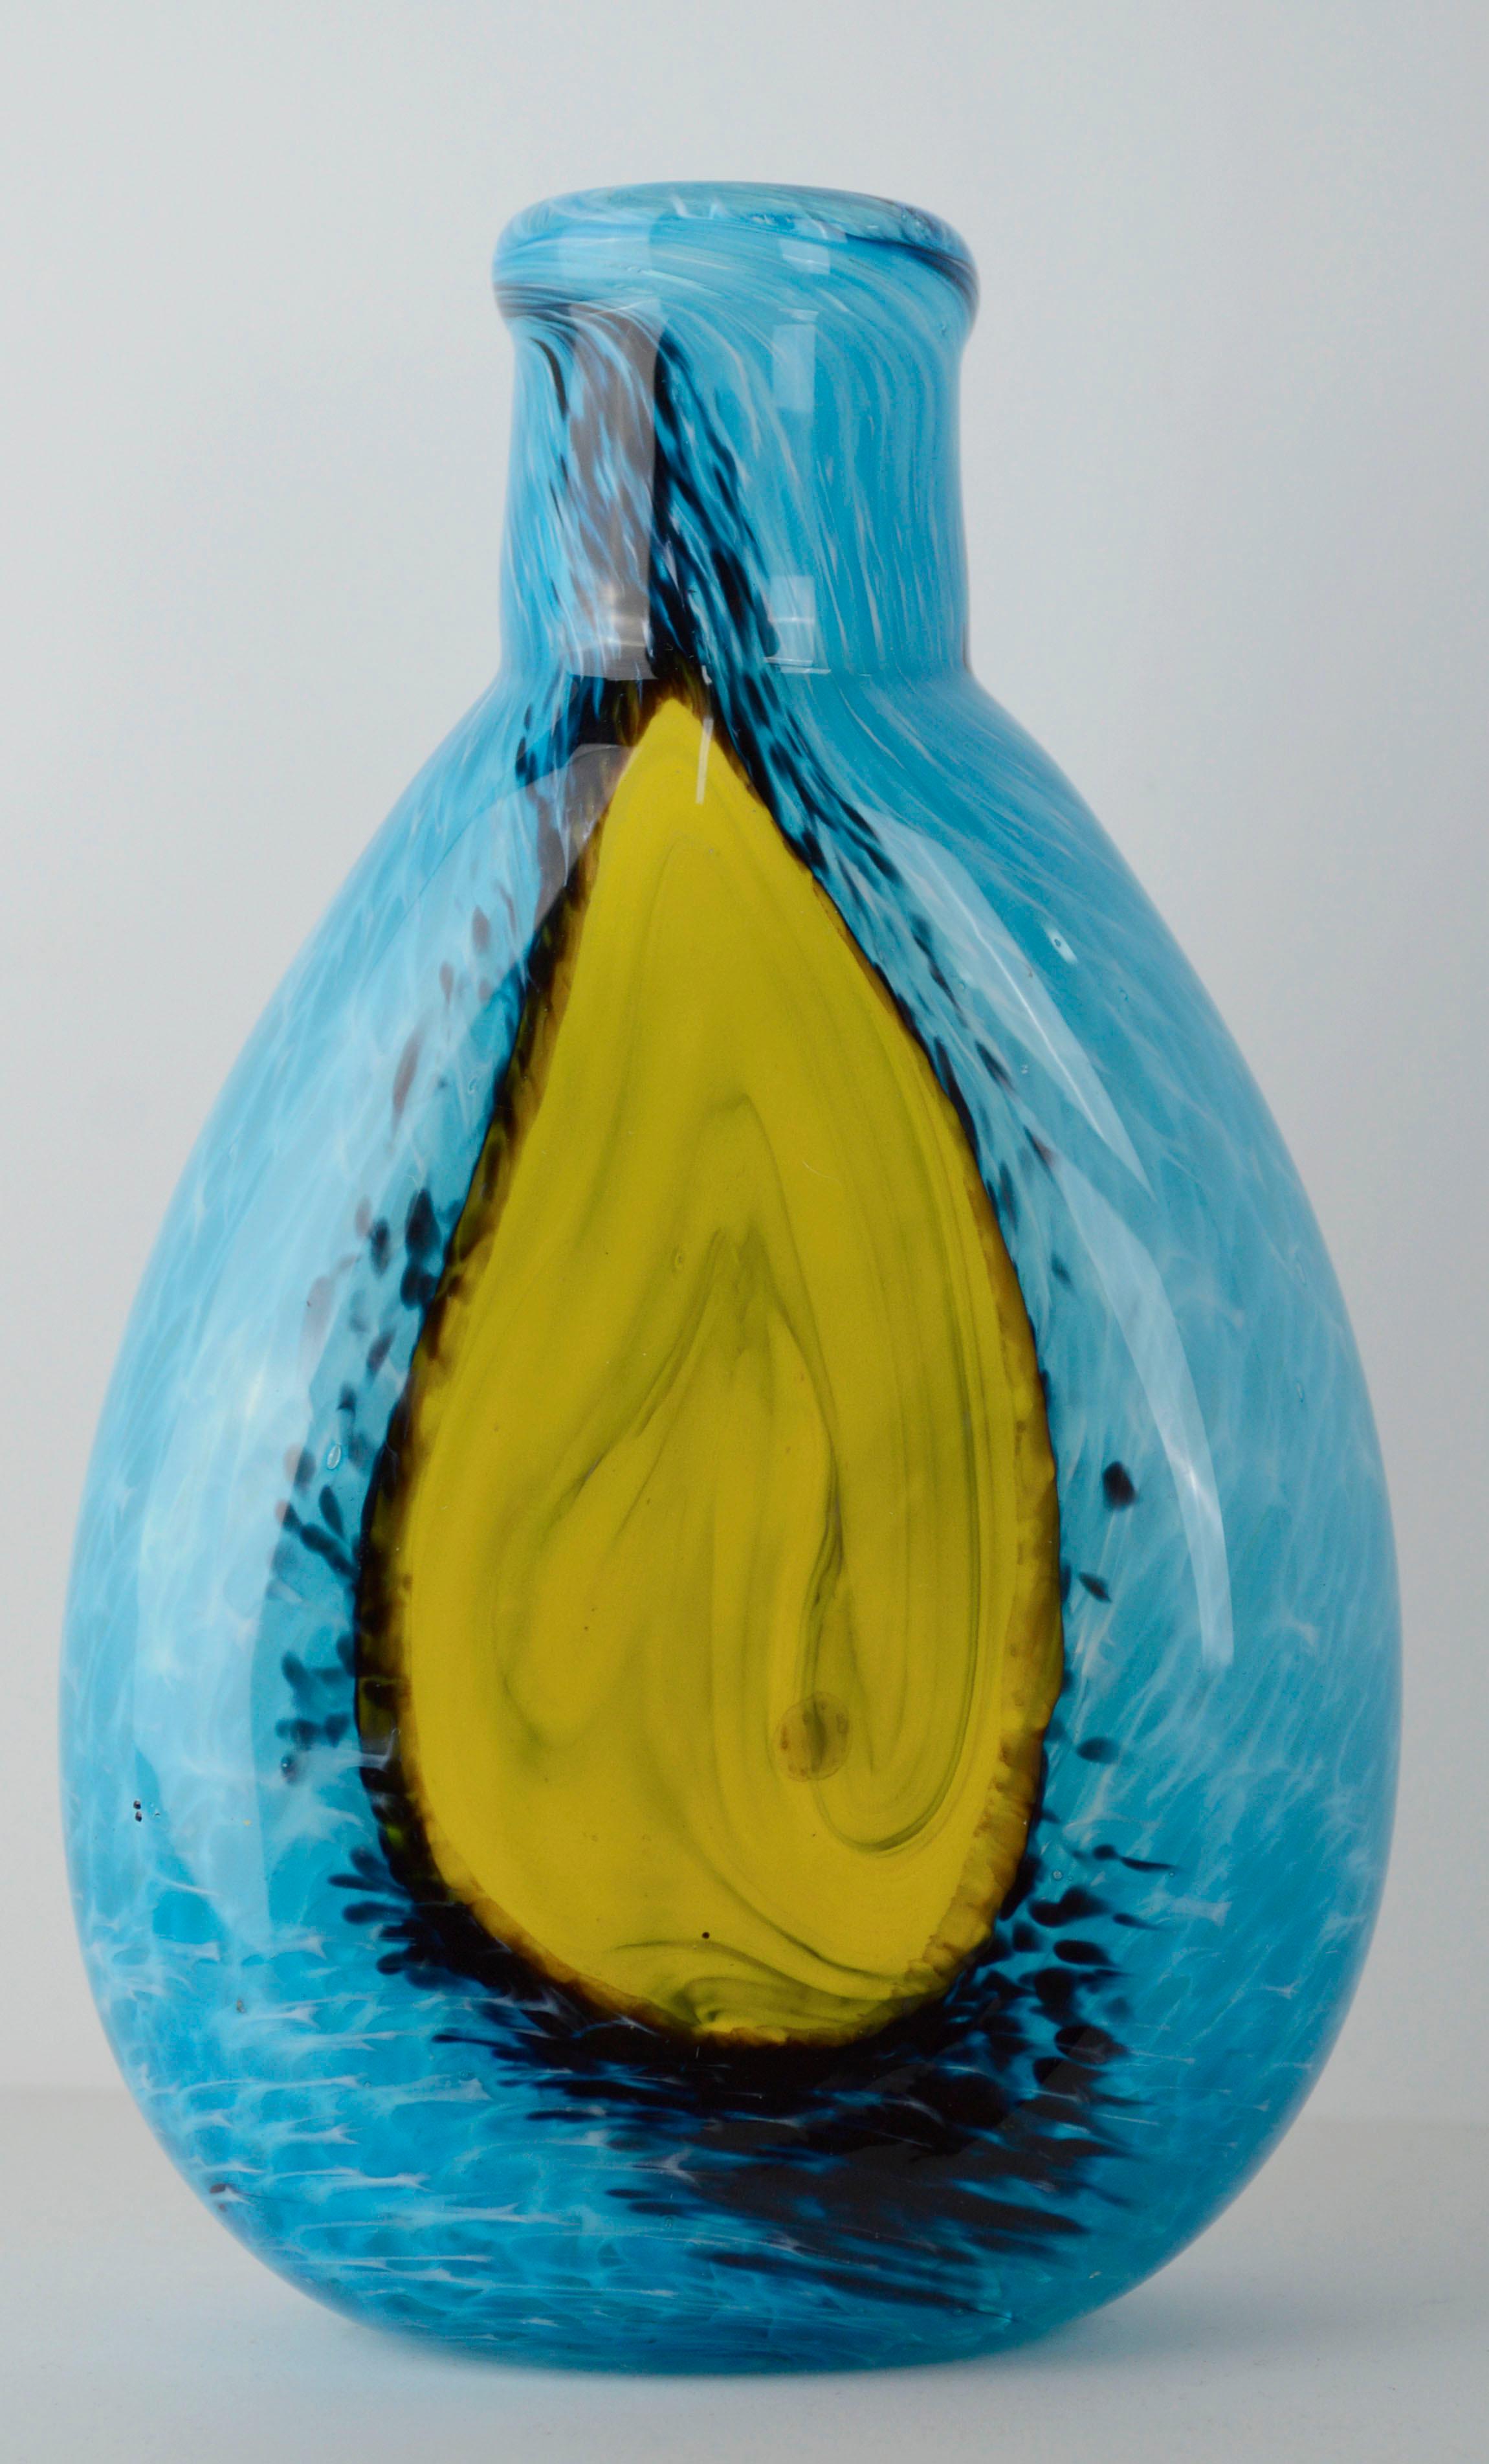 Vase moderne en verre soufflé bleu et jaune cyan, signé M. Saull

Vase en verre bleu cyan vibrant avec des accents jaunes et noirs rappelant l'agate. Le vase est soufflé à la main et a une forme organique, légèrement asymétrique. Signé à la main 